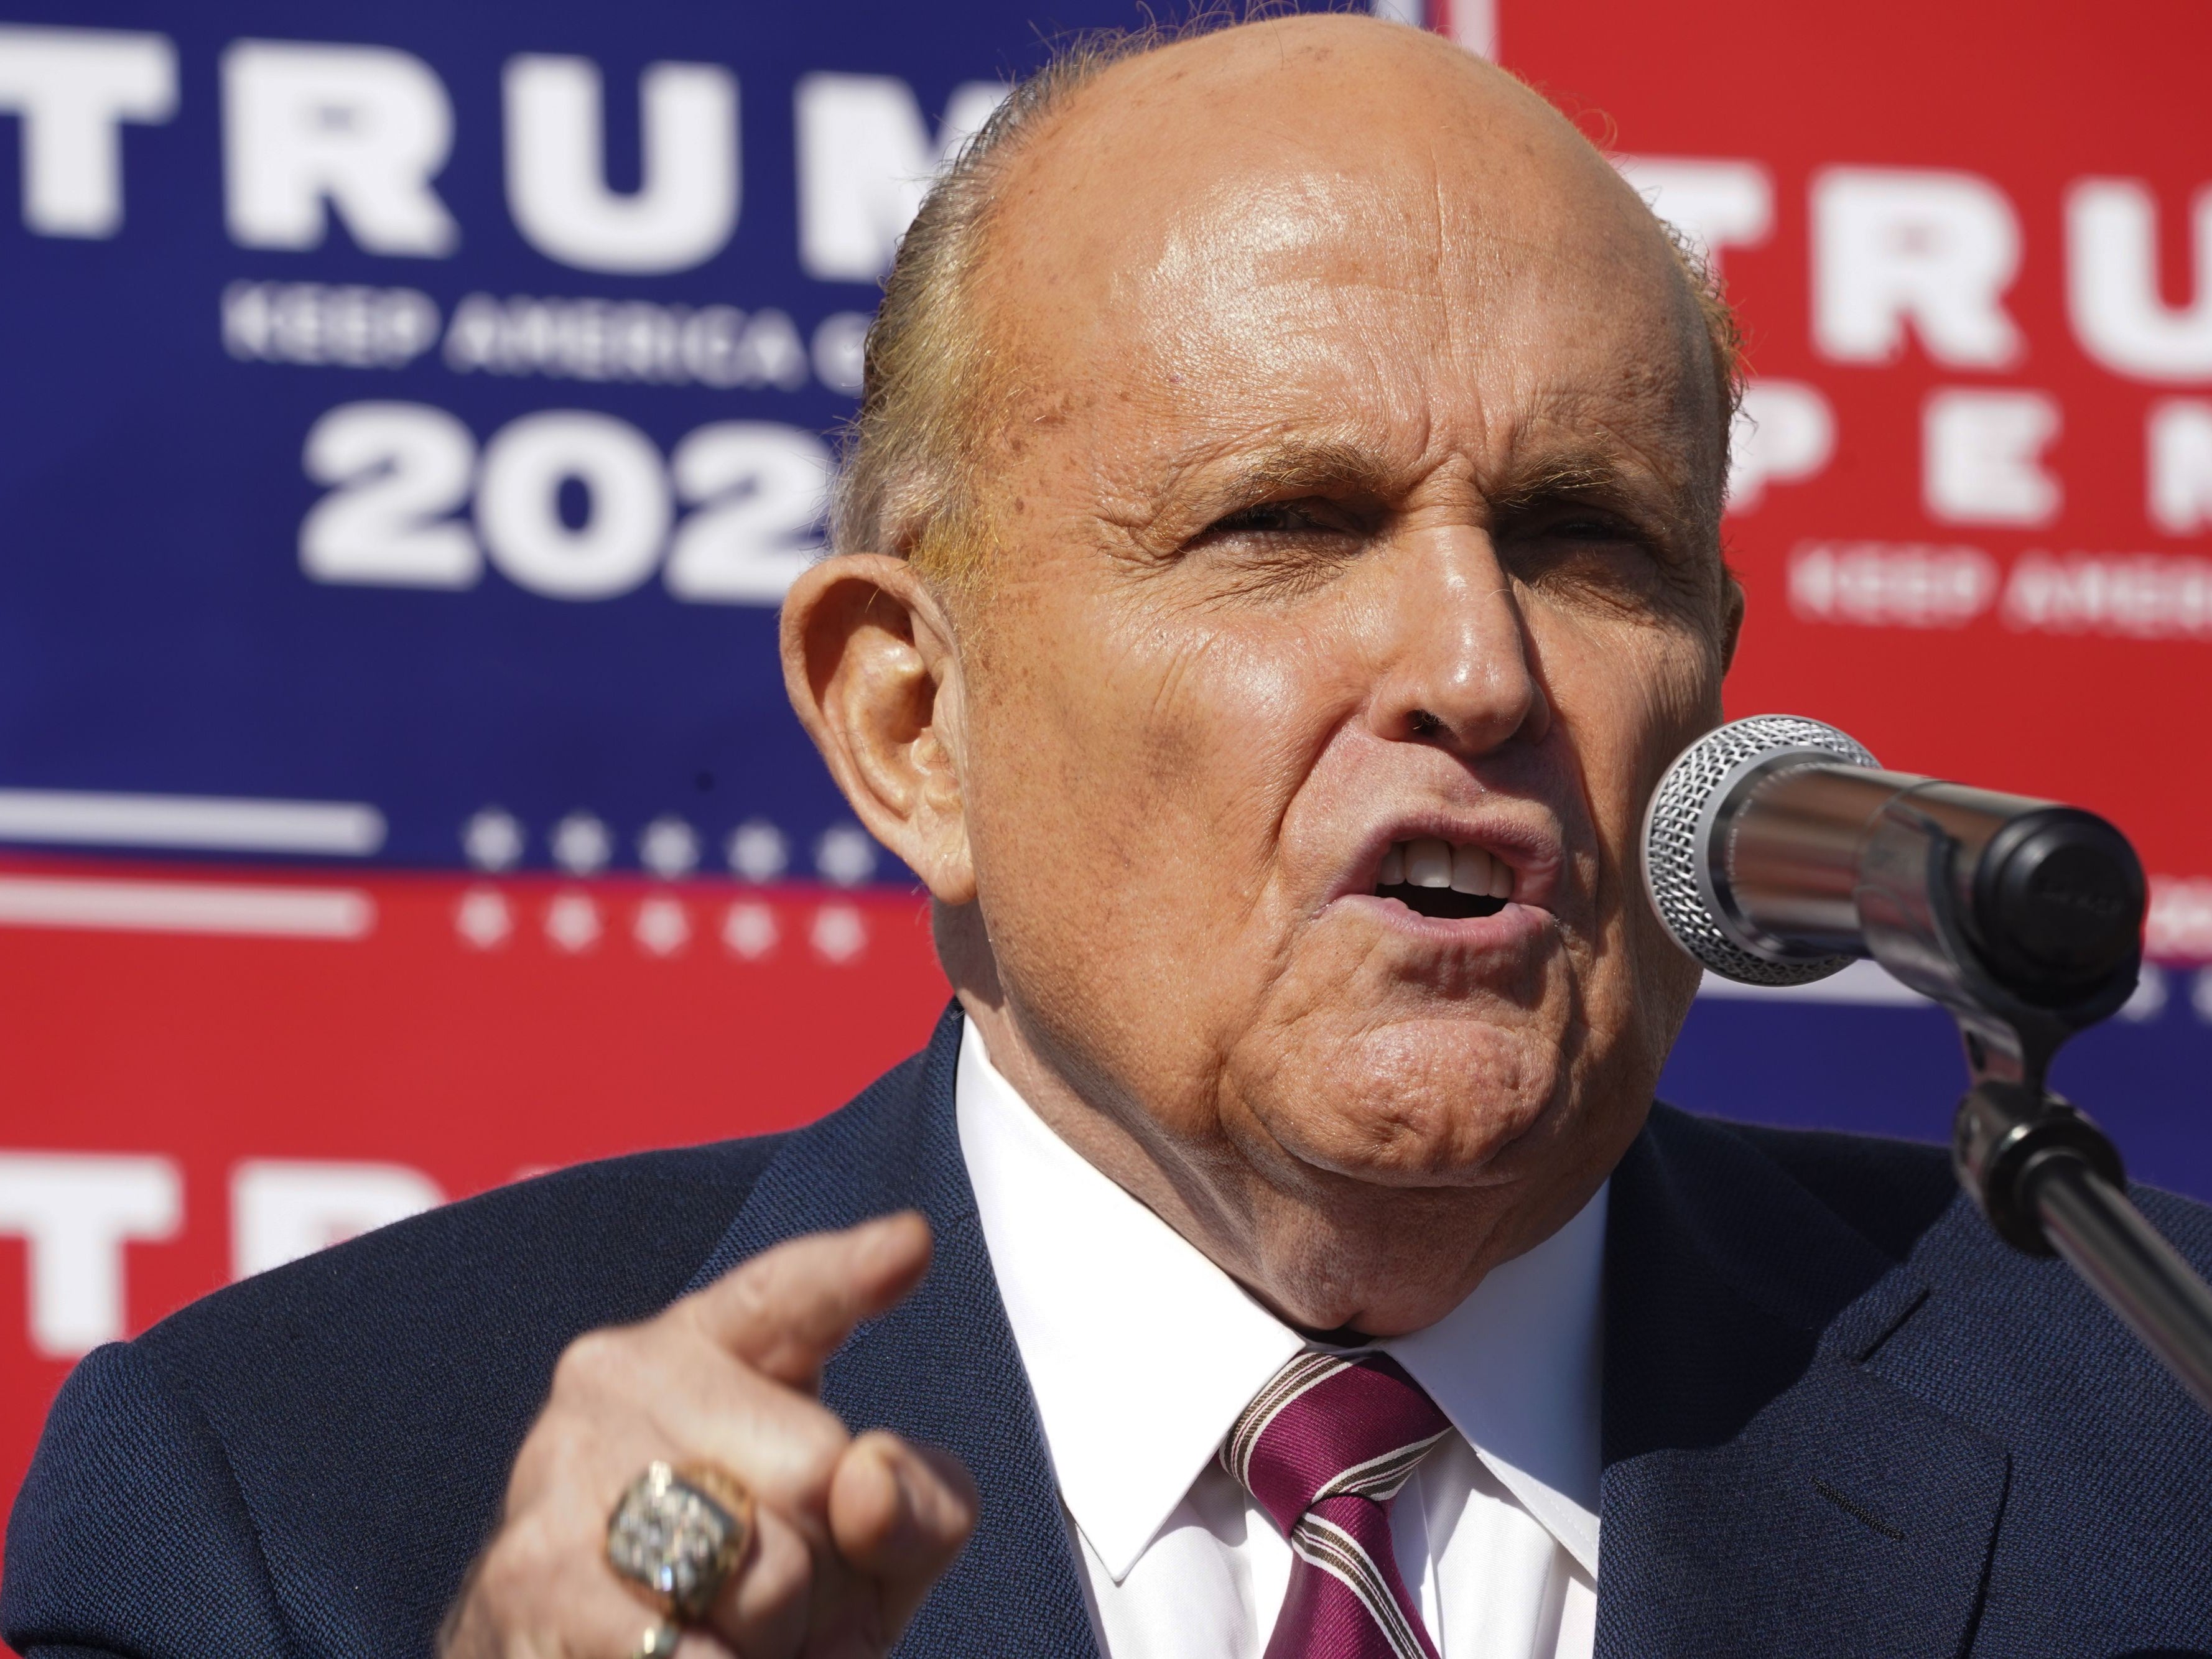 El abogado del presidente, Rudy Giuliani